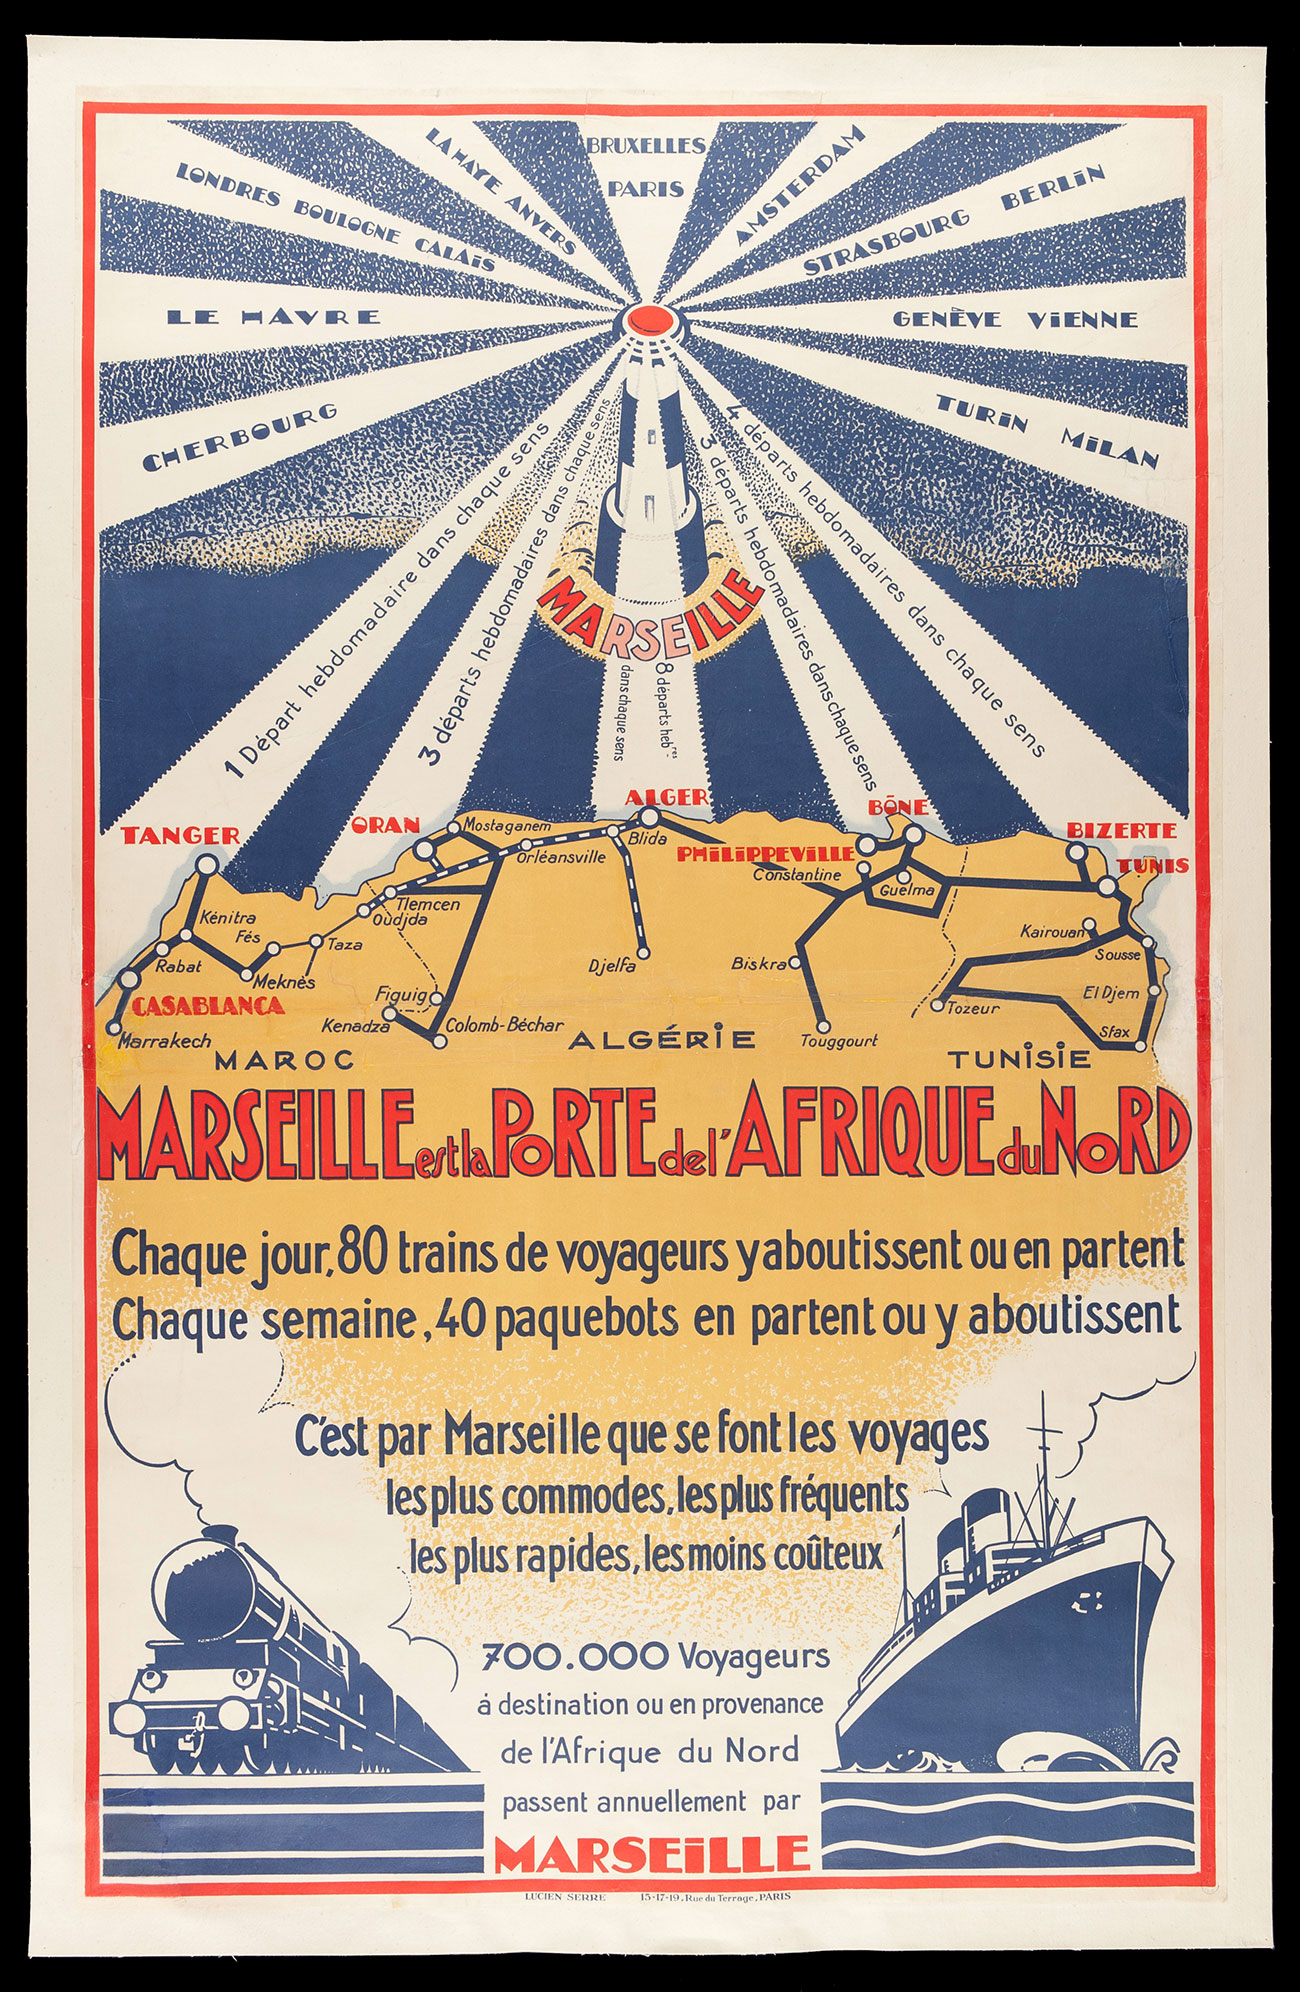 Lucien Serre, affiche « Marseille et la porte de l’Afrique du Nord », 2e quart du XXe siècle, lithographie, 99 x 62 cm © Mucem